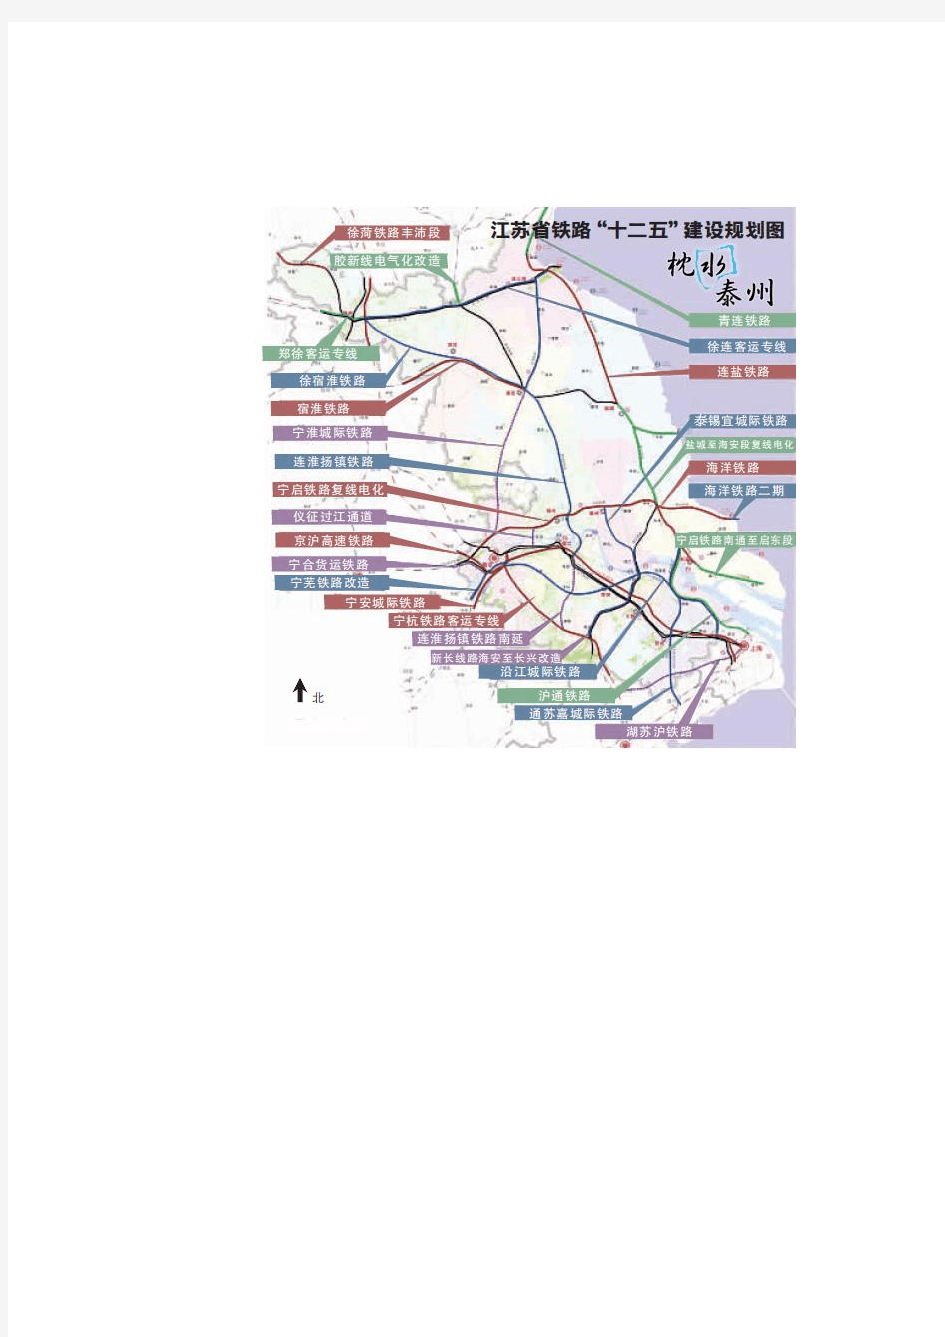 江苏省十二五铁路规划图